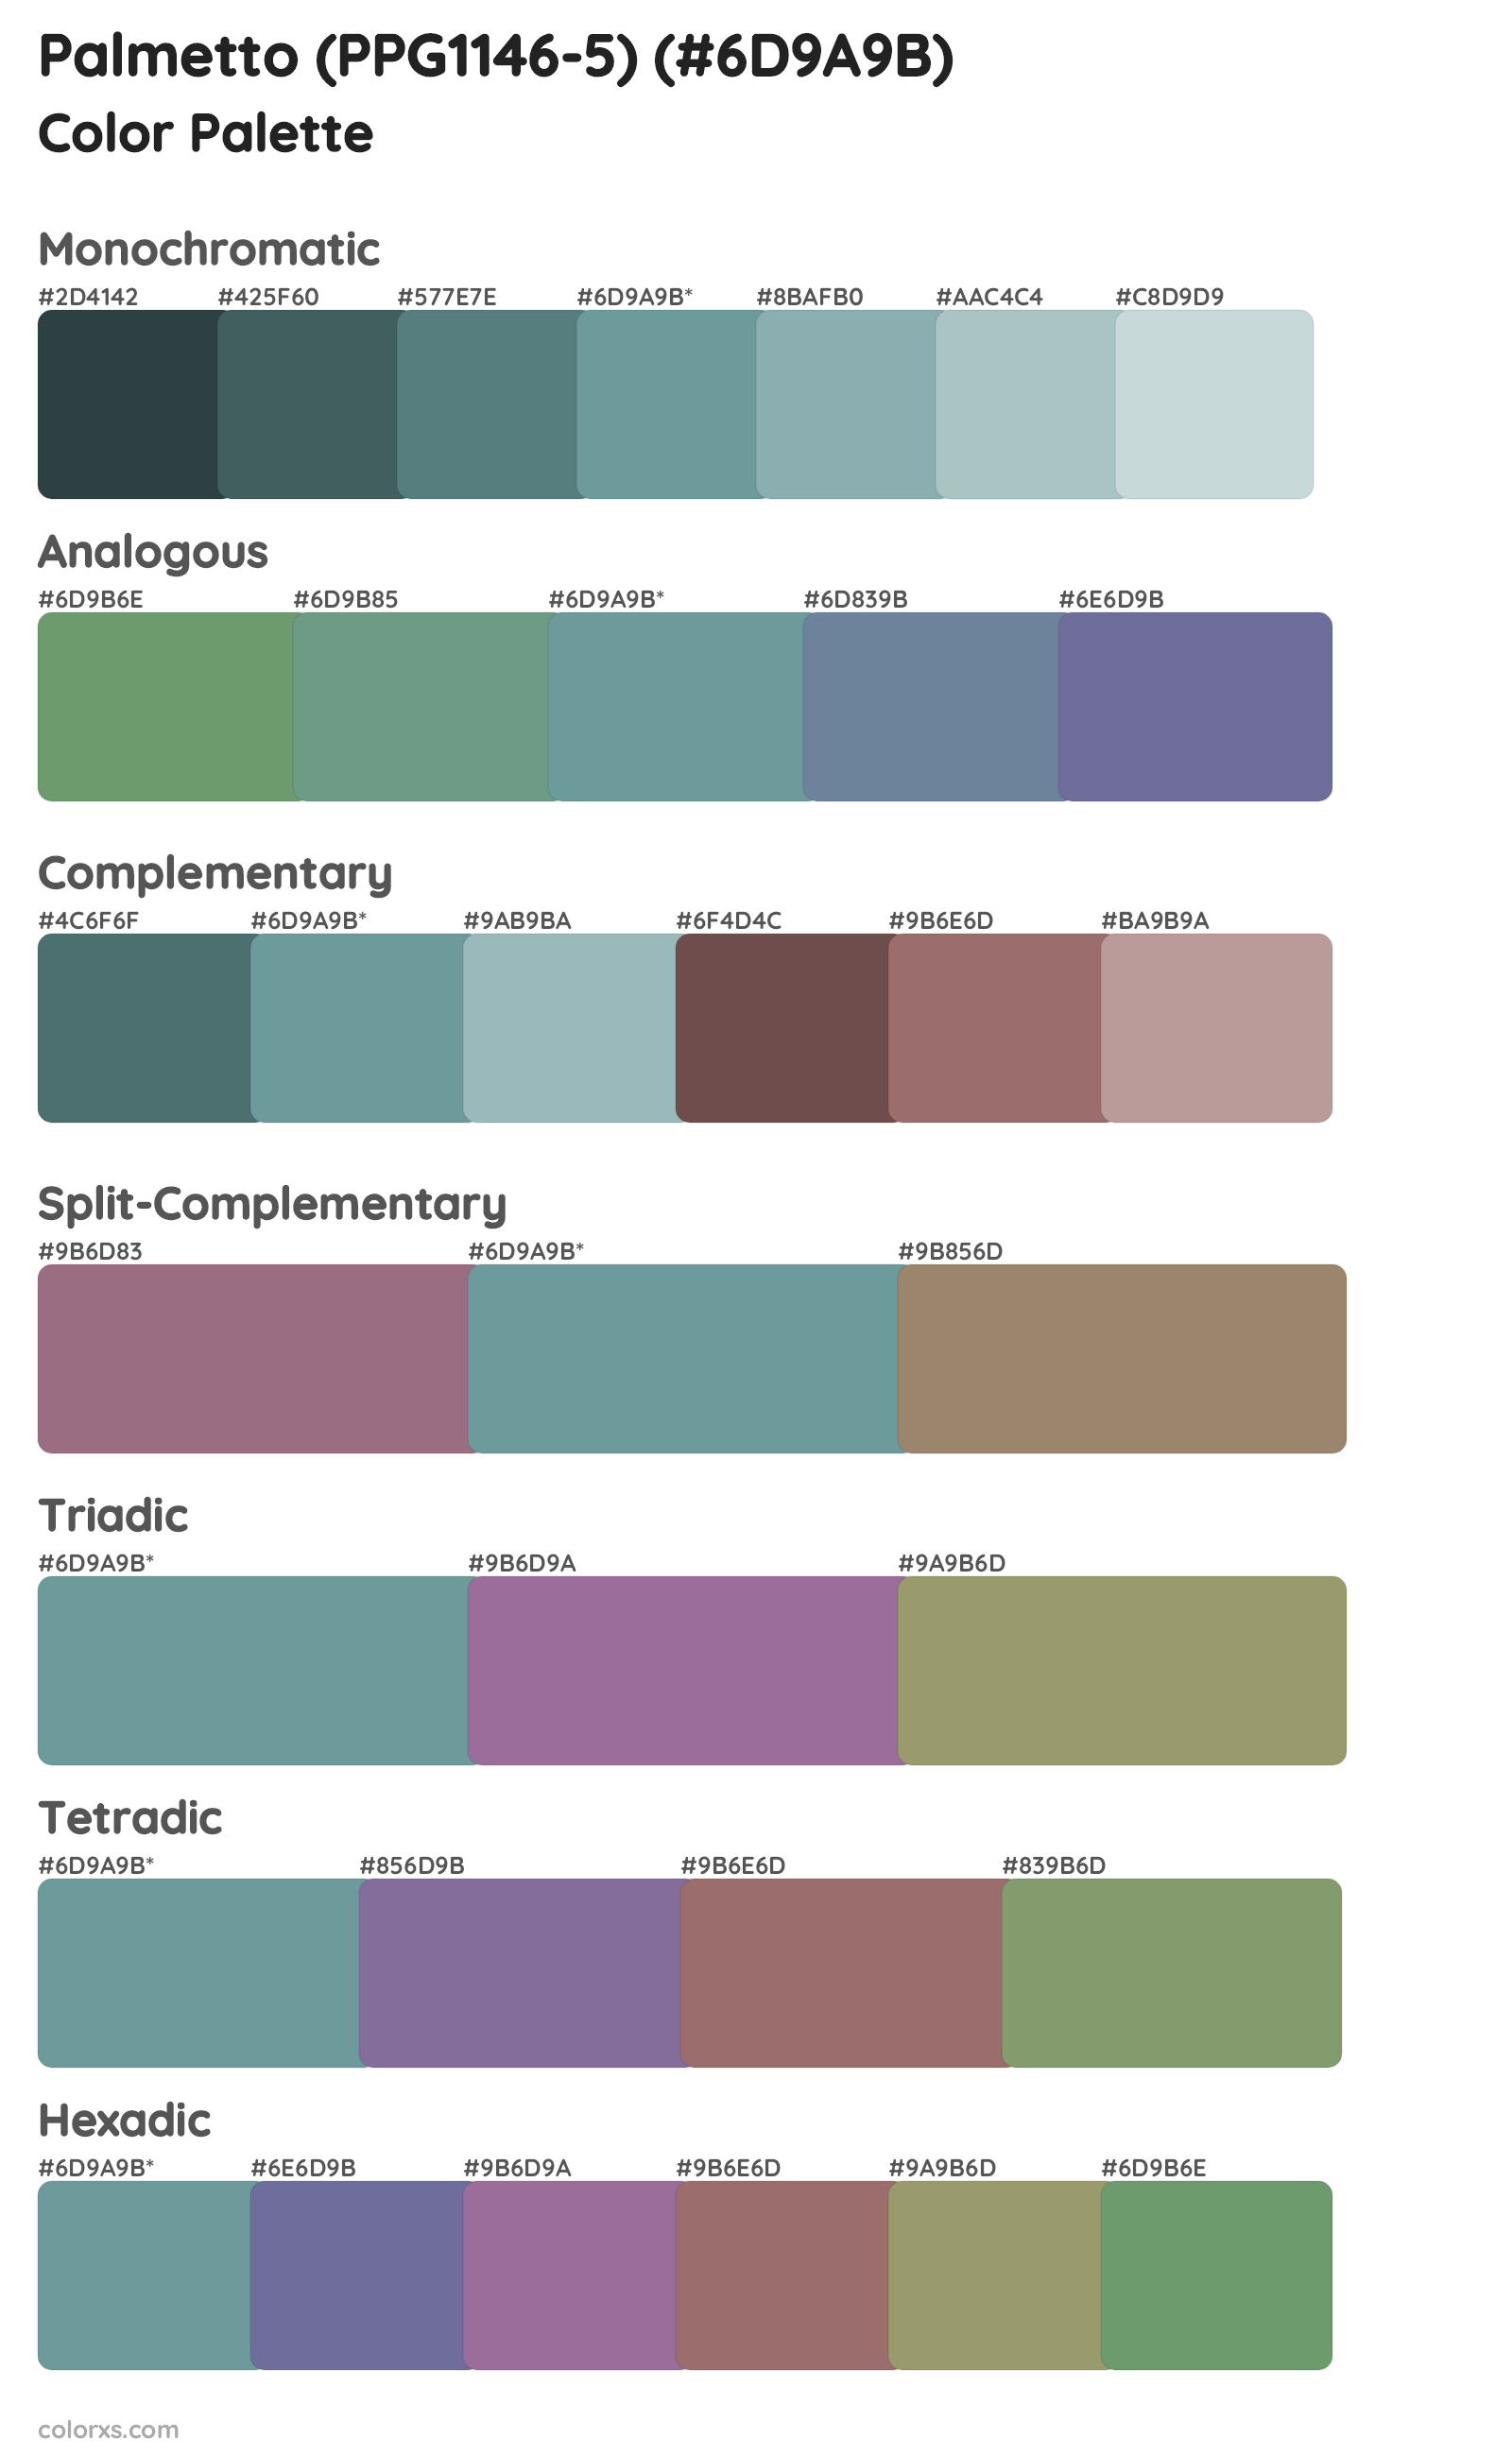 Palmetto (PPG1146-5) Color Scheme Palettes